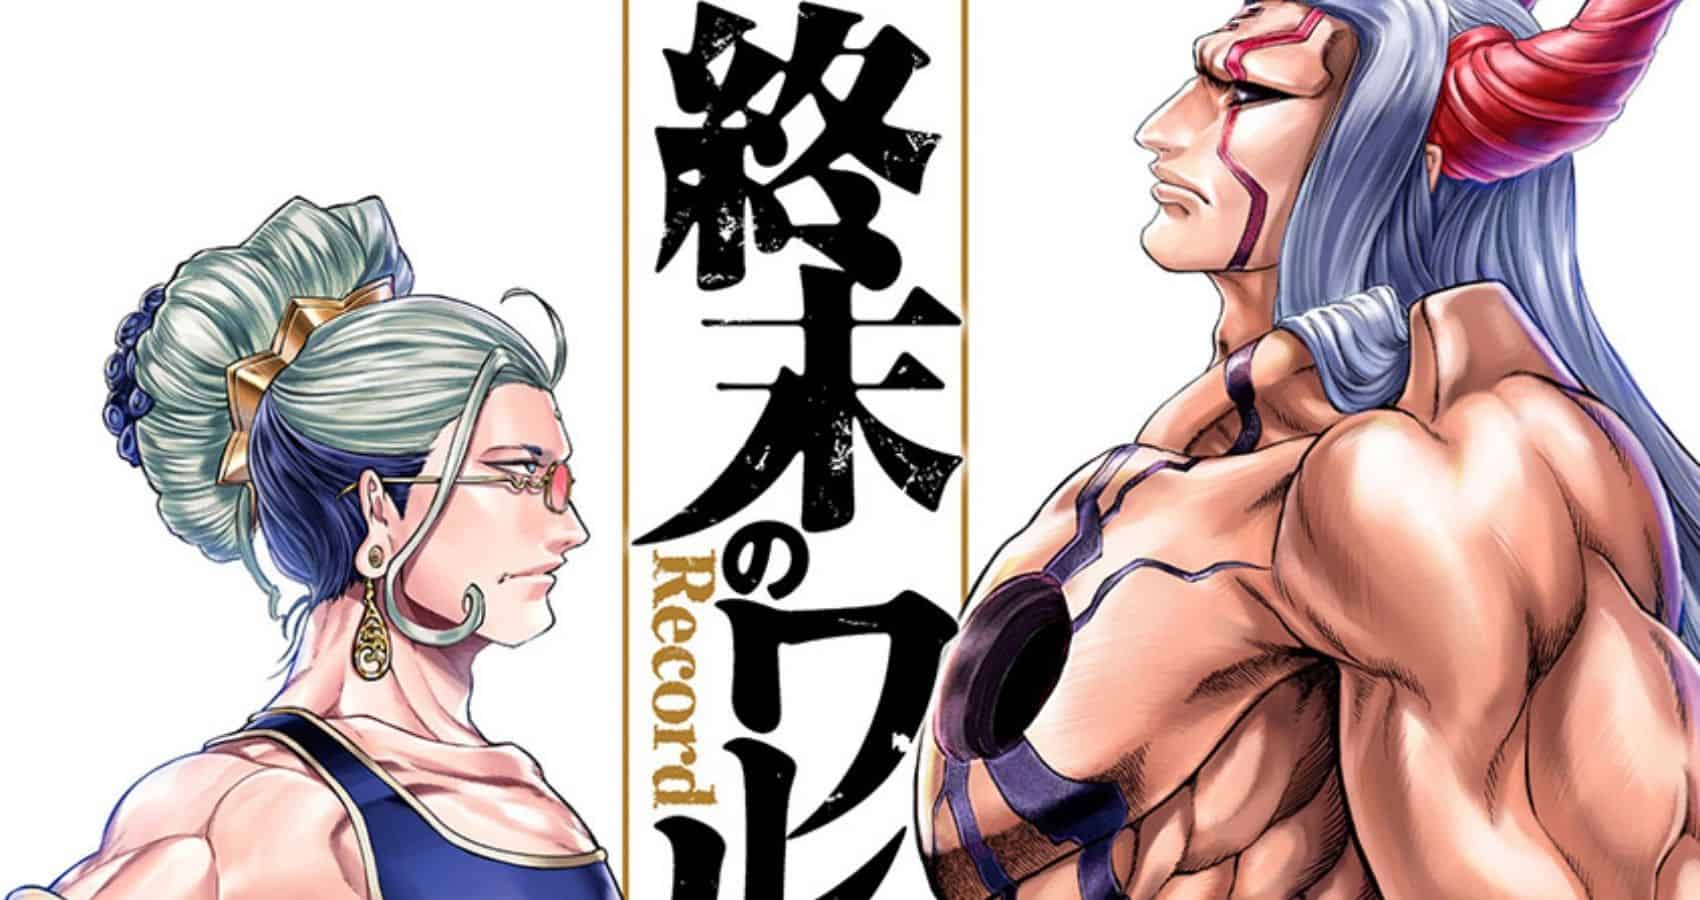 Mangamo Licenses Three New Manga Series